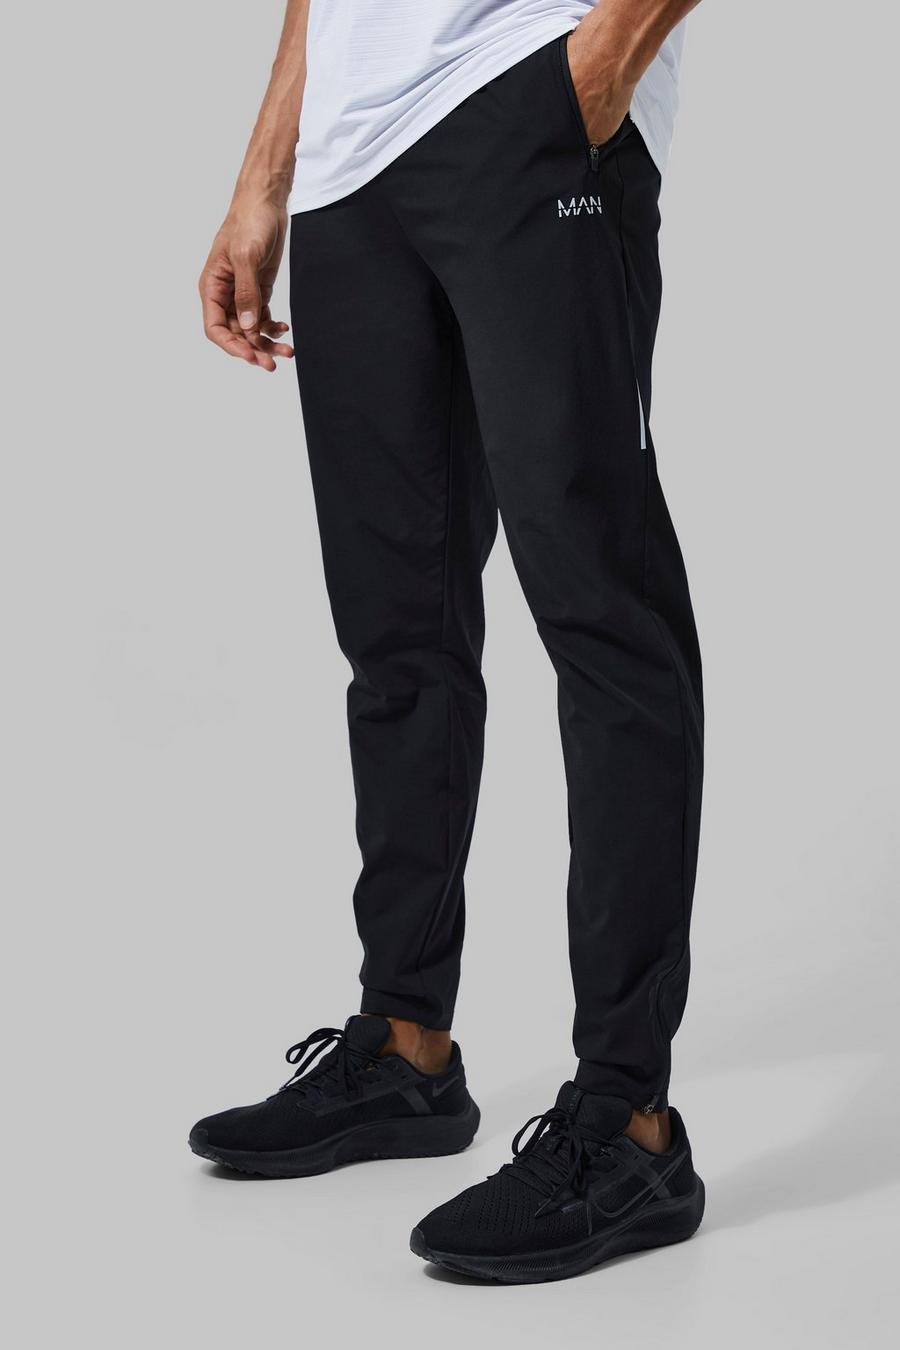 Pantaloni tuta Tall Man Active leggeri per alta performance, Black